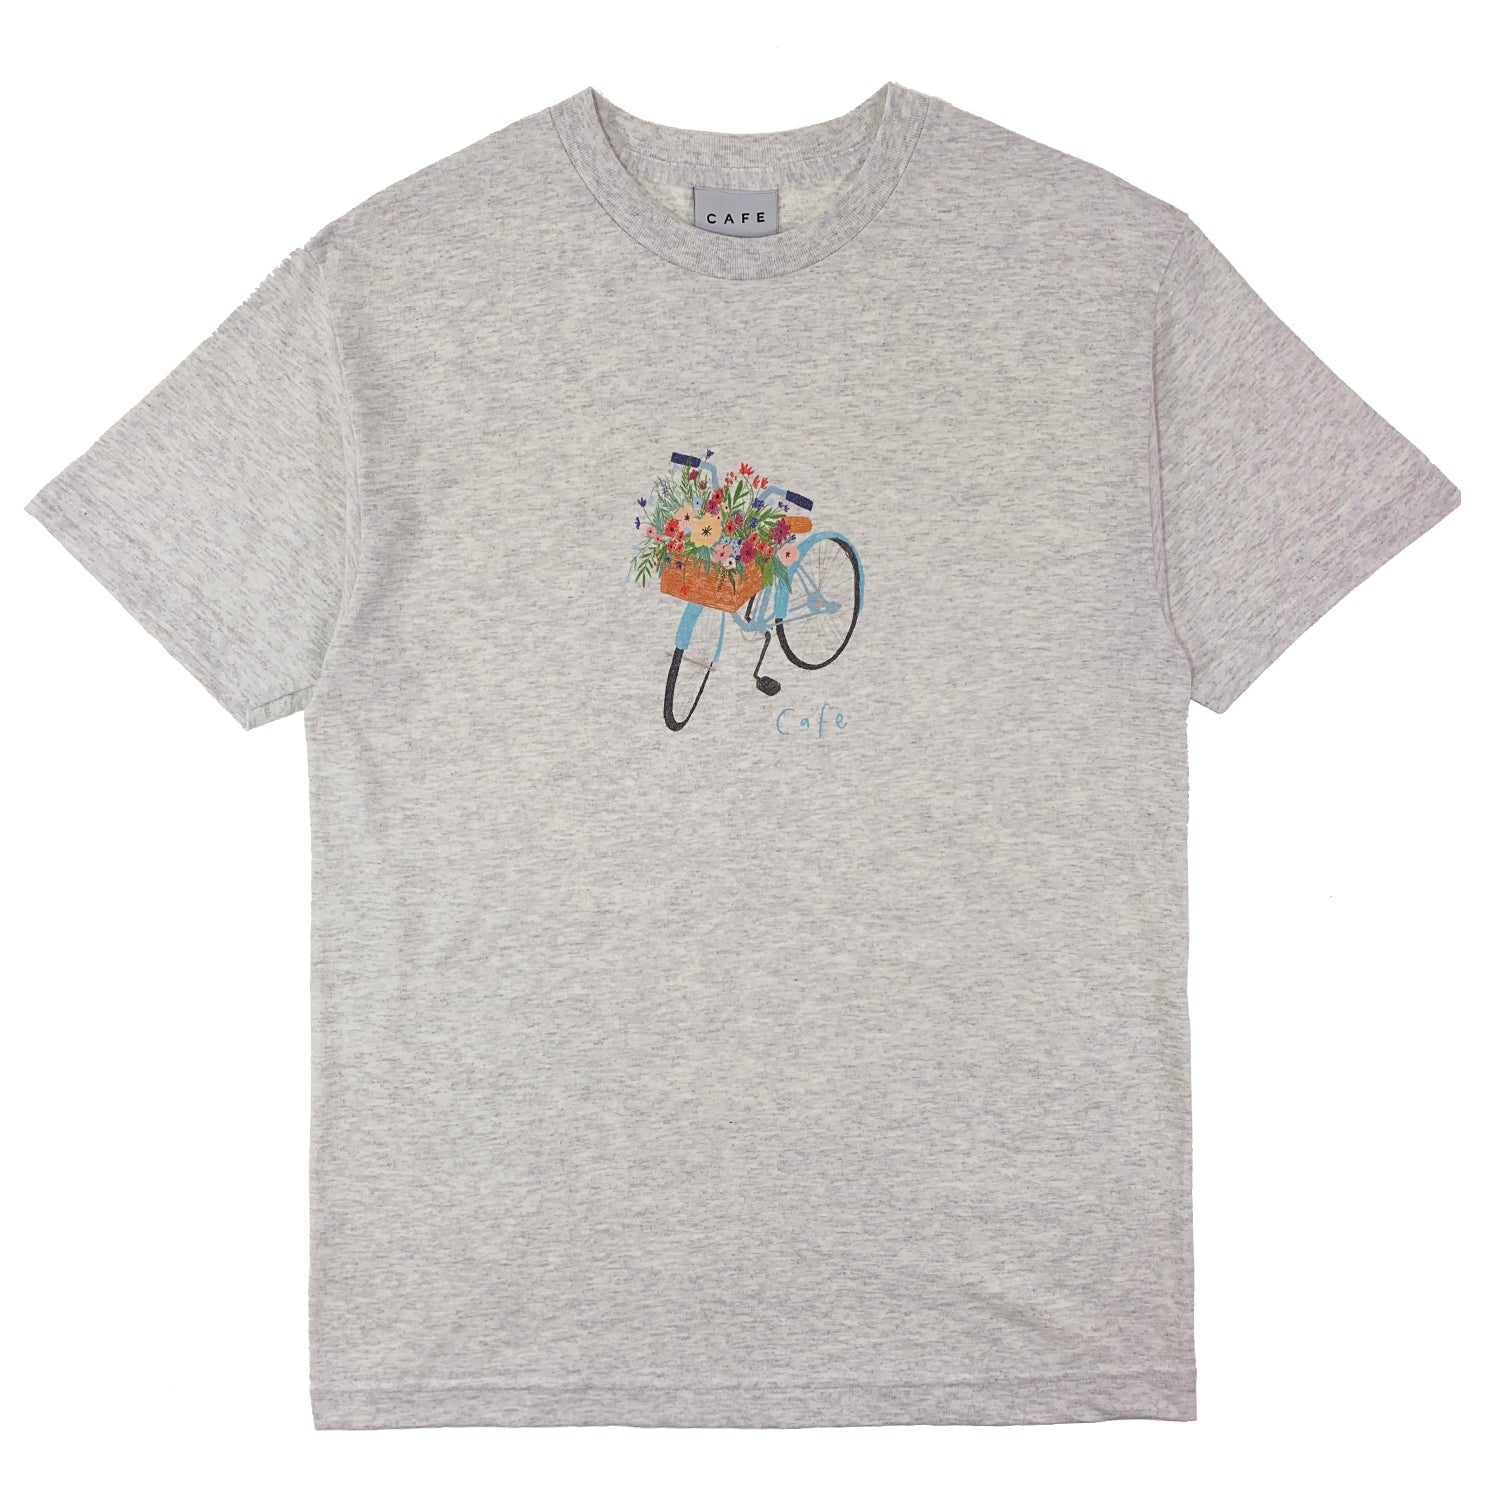 Skateboard Cafe - Flower Basket T Shirt - Ash Heather - Prime Delux Store